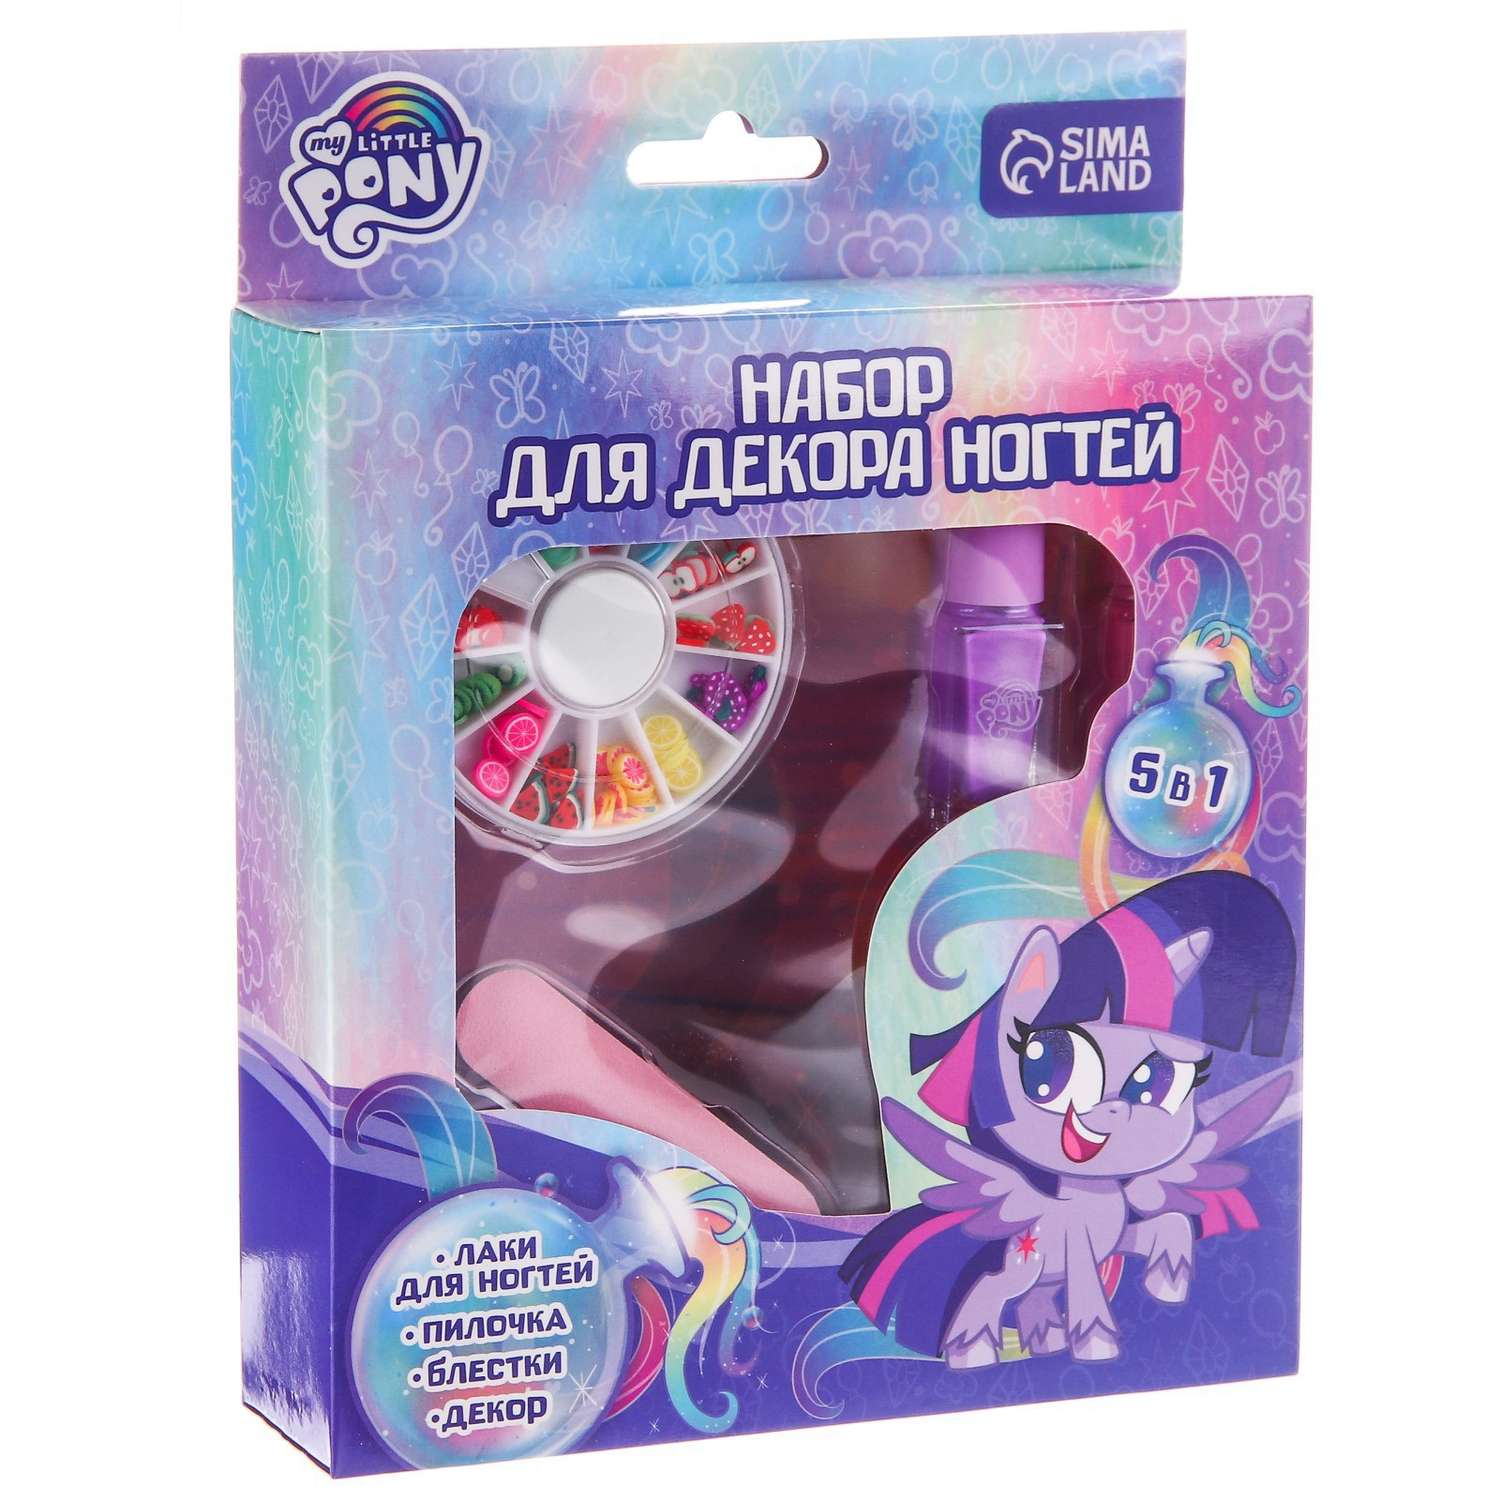 Набор Hasbro для декора ногтей «Искорка» My Little Pony - фото 2